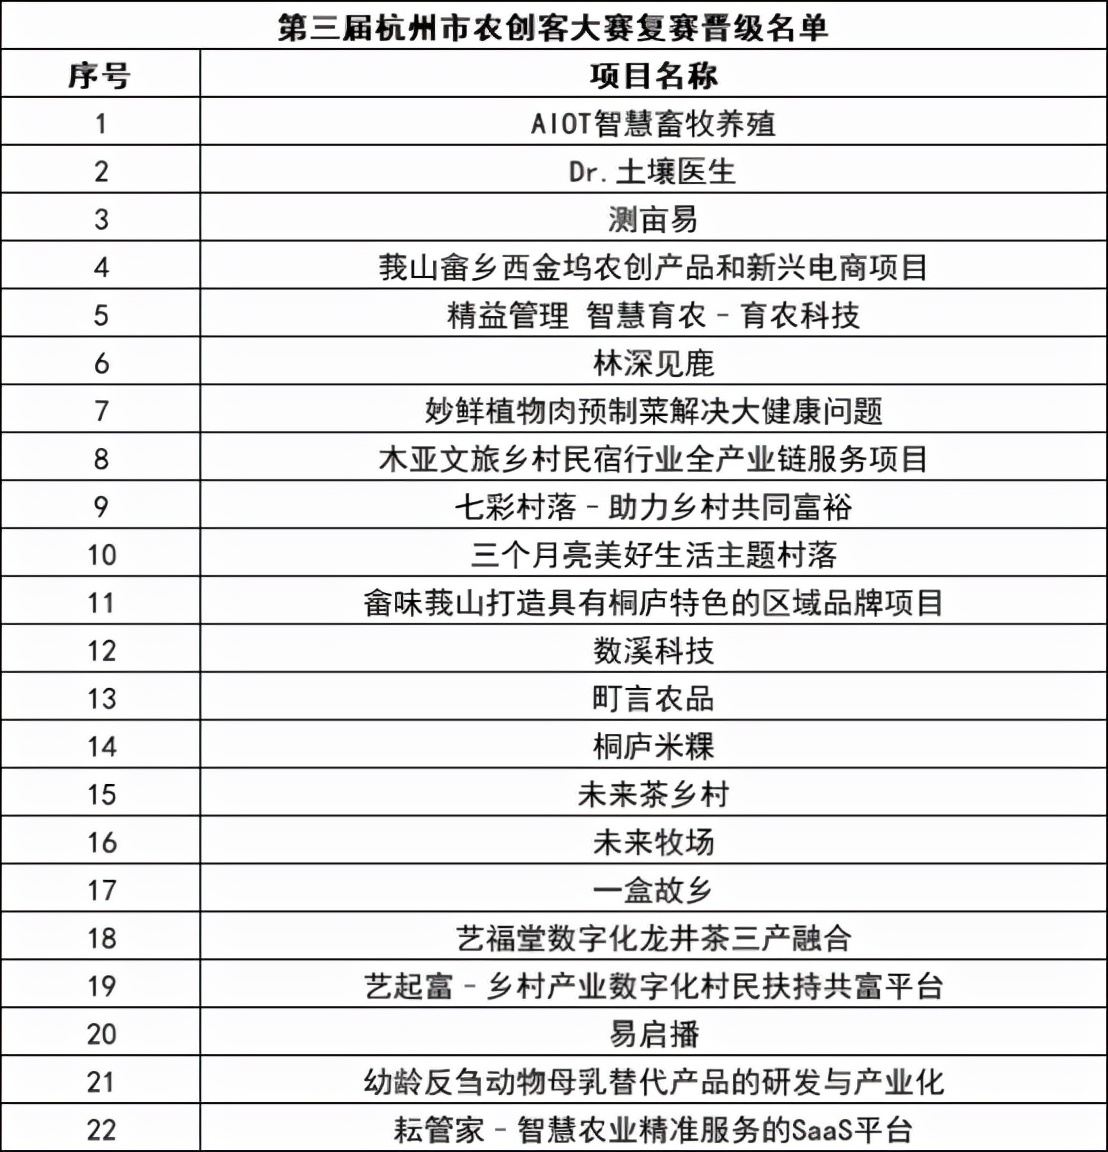 桐心共创 洞见未来 第三届杭州市农创客大赛复赛名单出炉